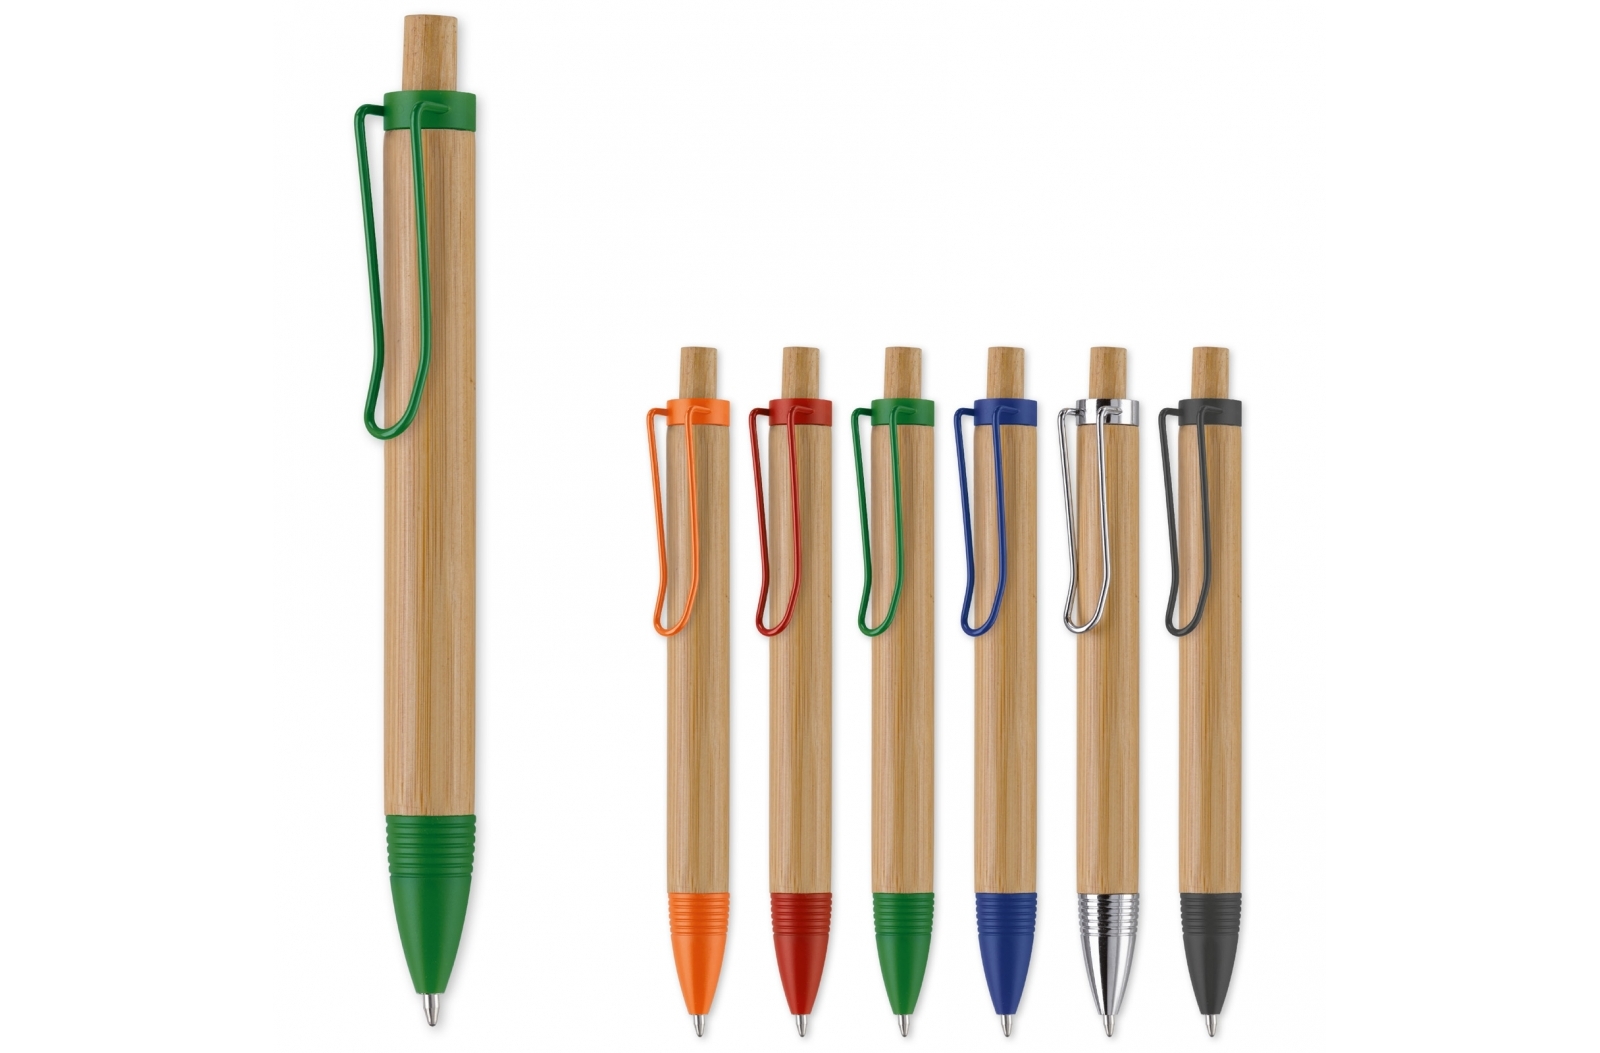 Kugelschreiber im Bambus Design